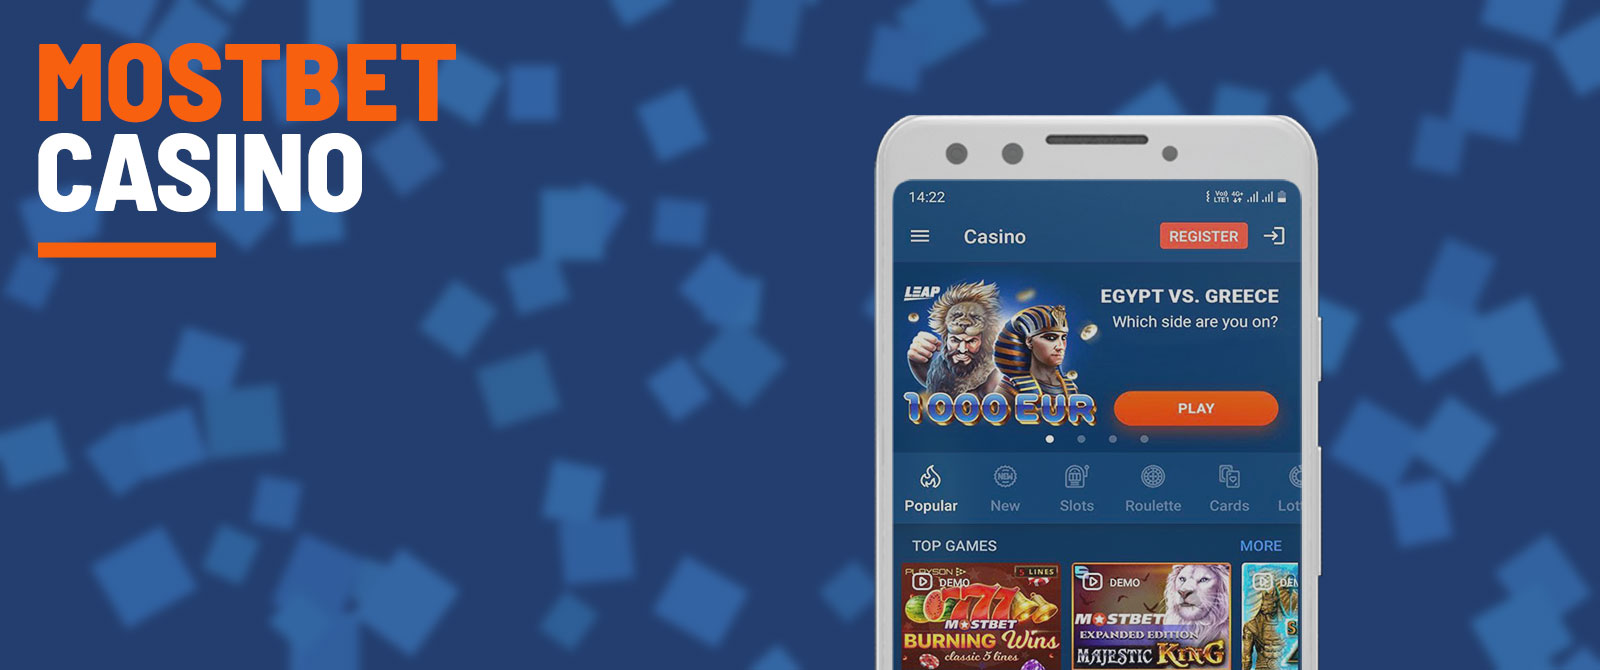 Mostbet online casino platform.